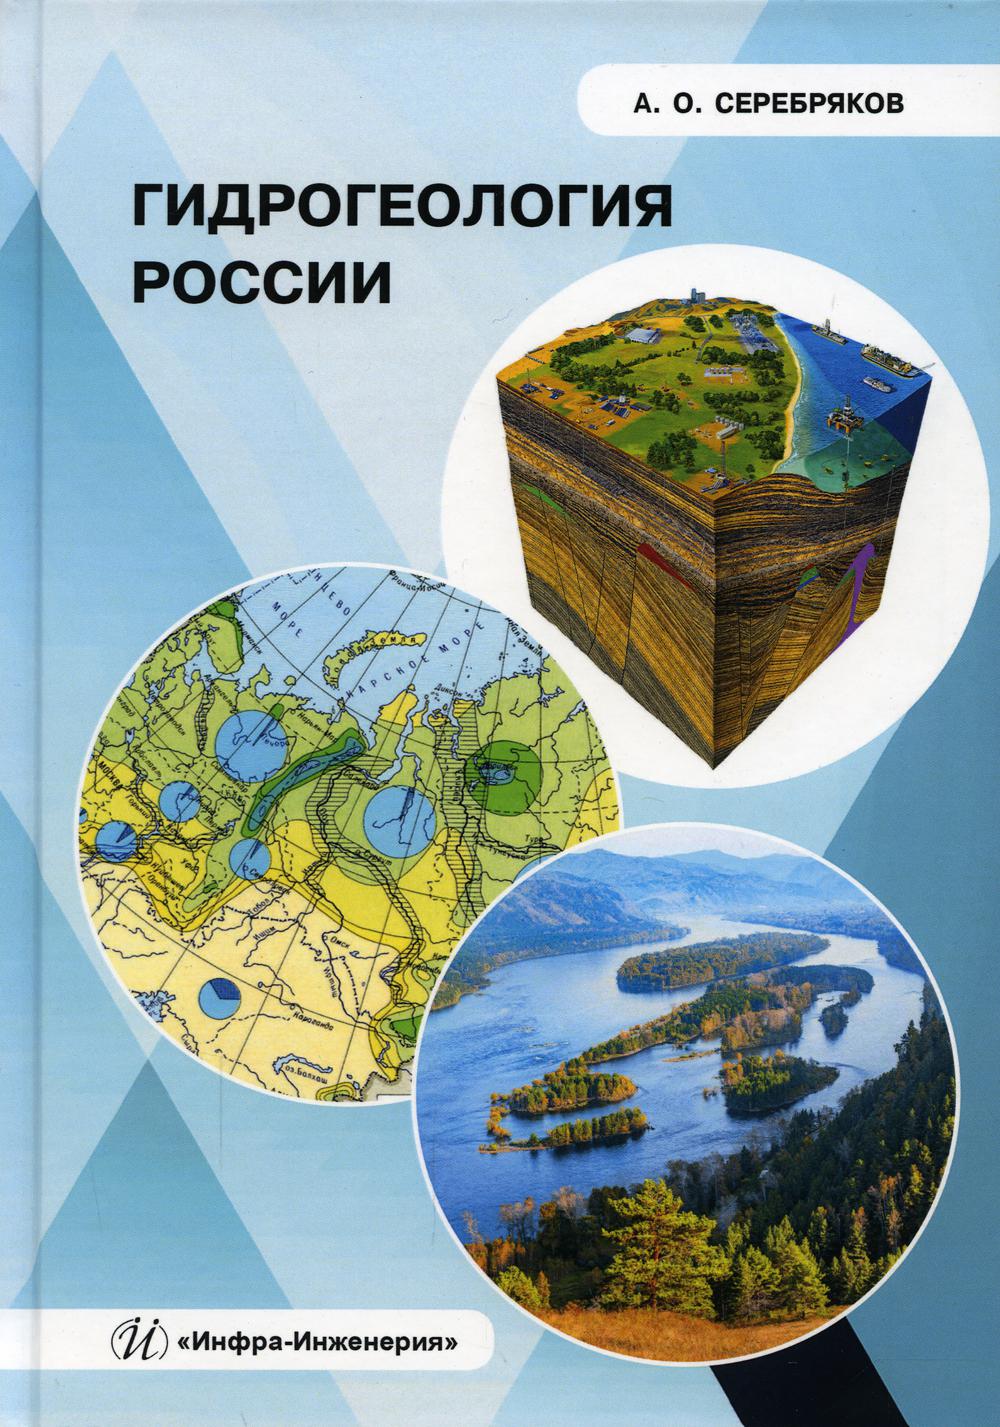 фото Книга гидрогеология россии инфра-инженерия